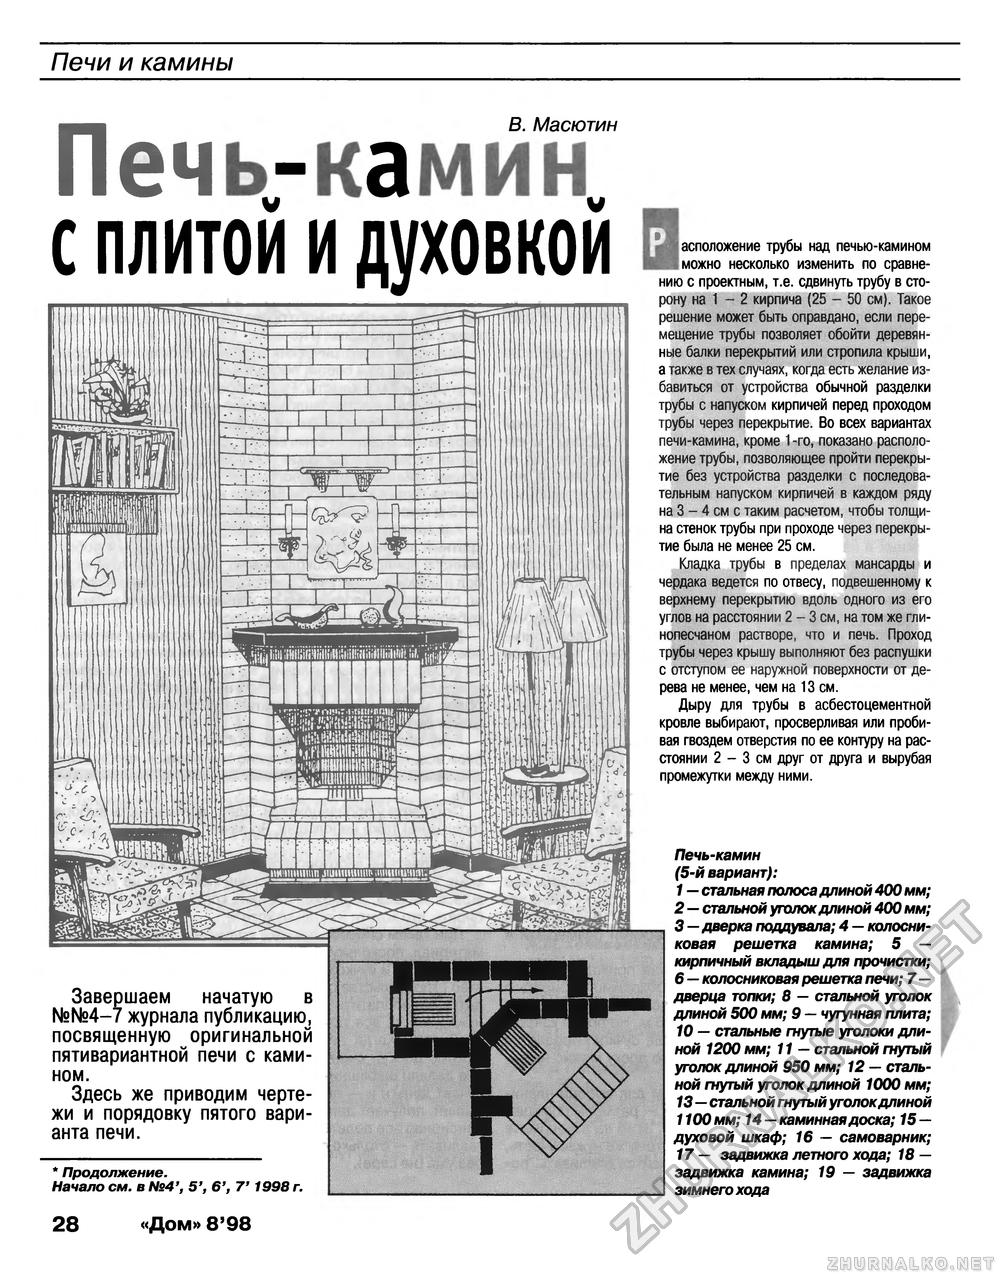 Дом 1998-08, страница 28